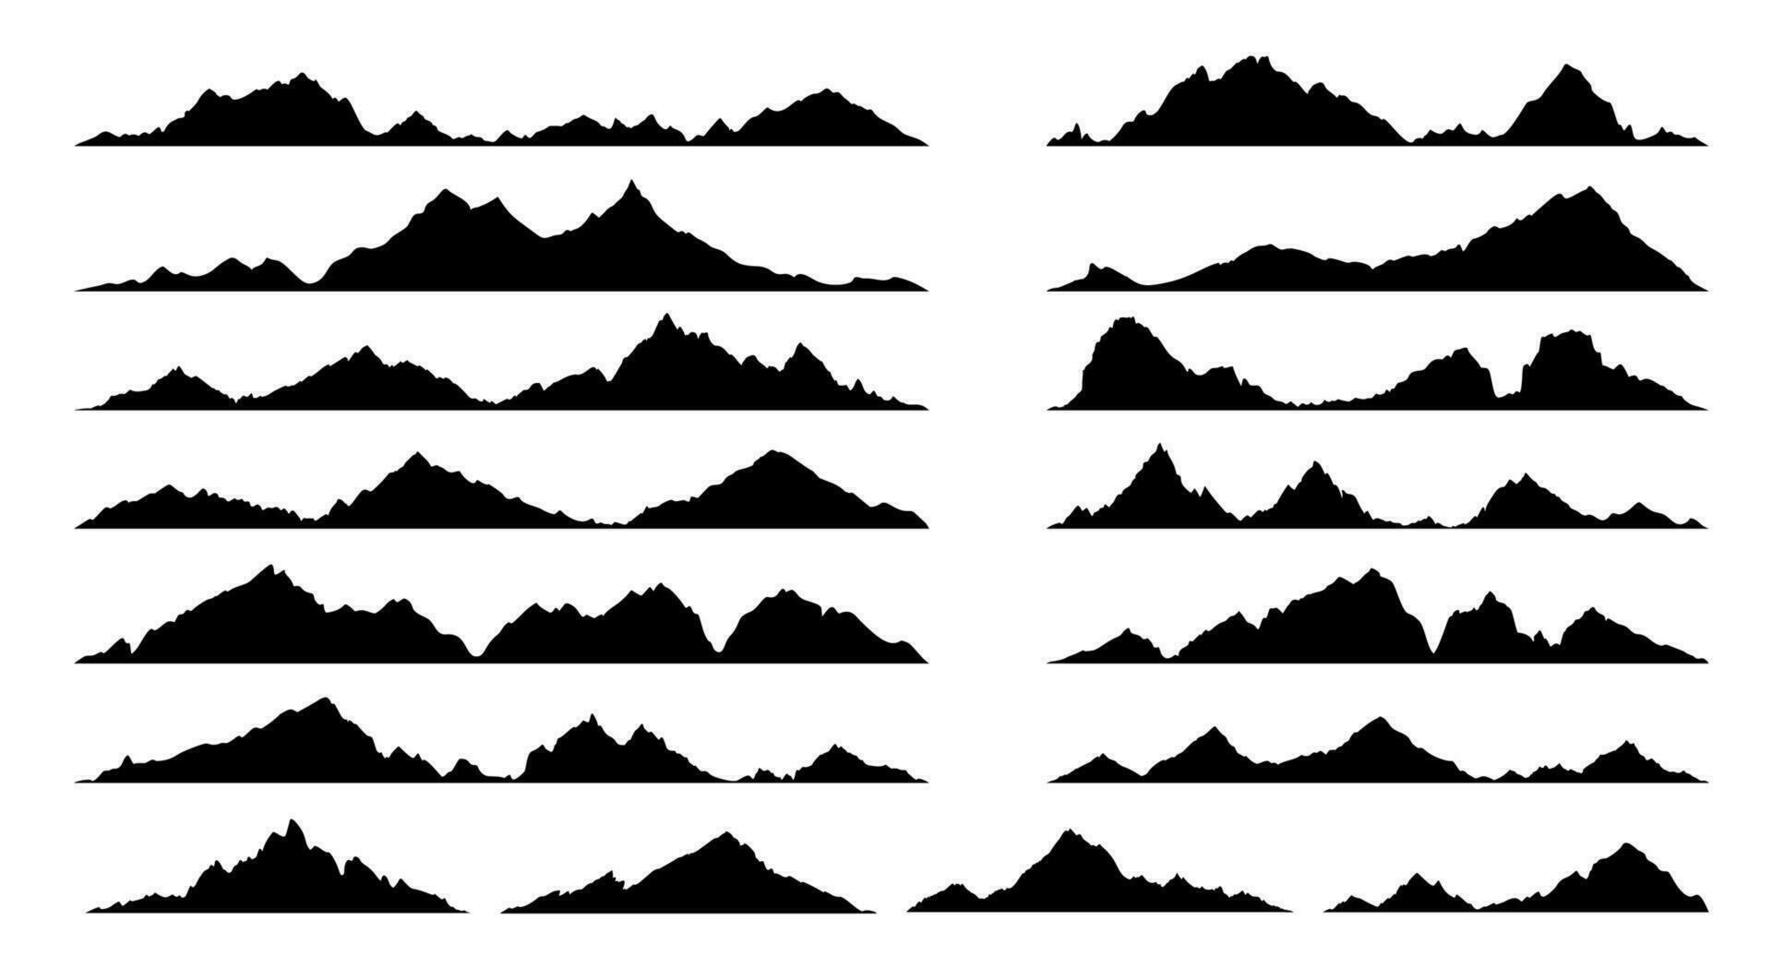 steen, heuvel en berg zwart silhouetten, alp reeks vector